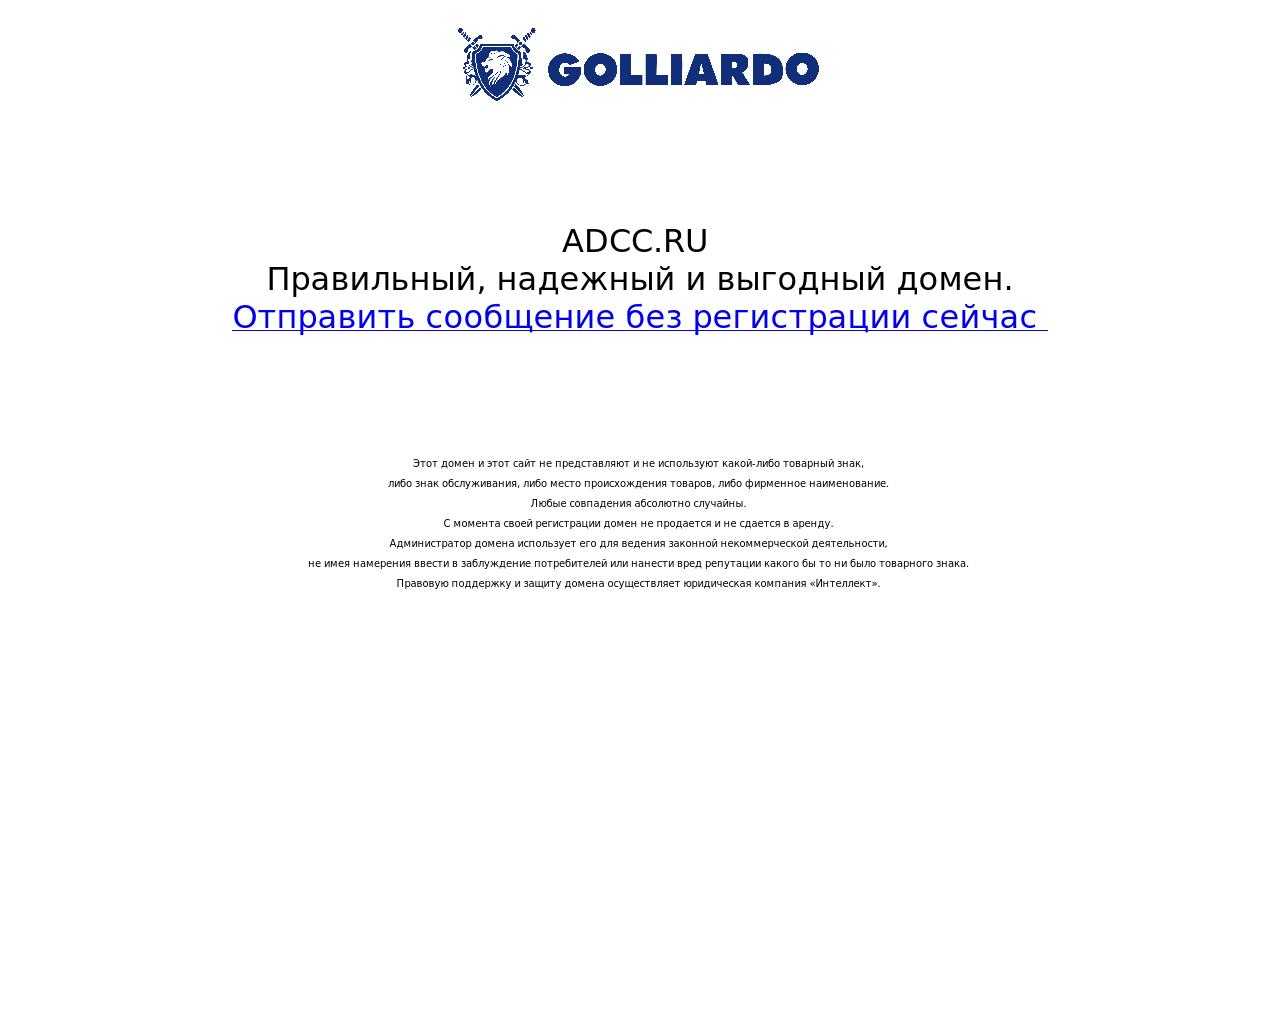 Изображение сайта adcc.ru в разрешении 1280x1024